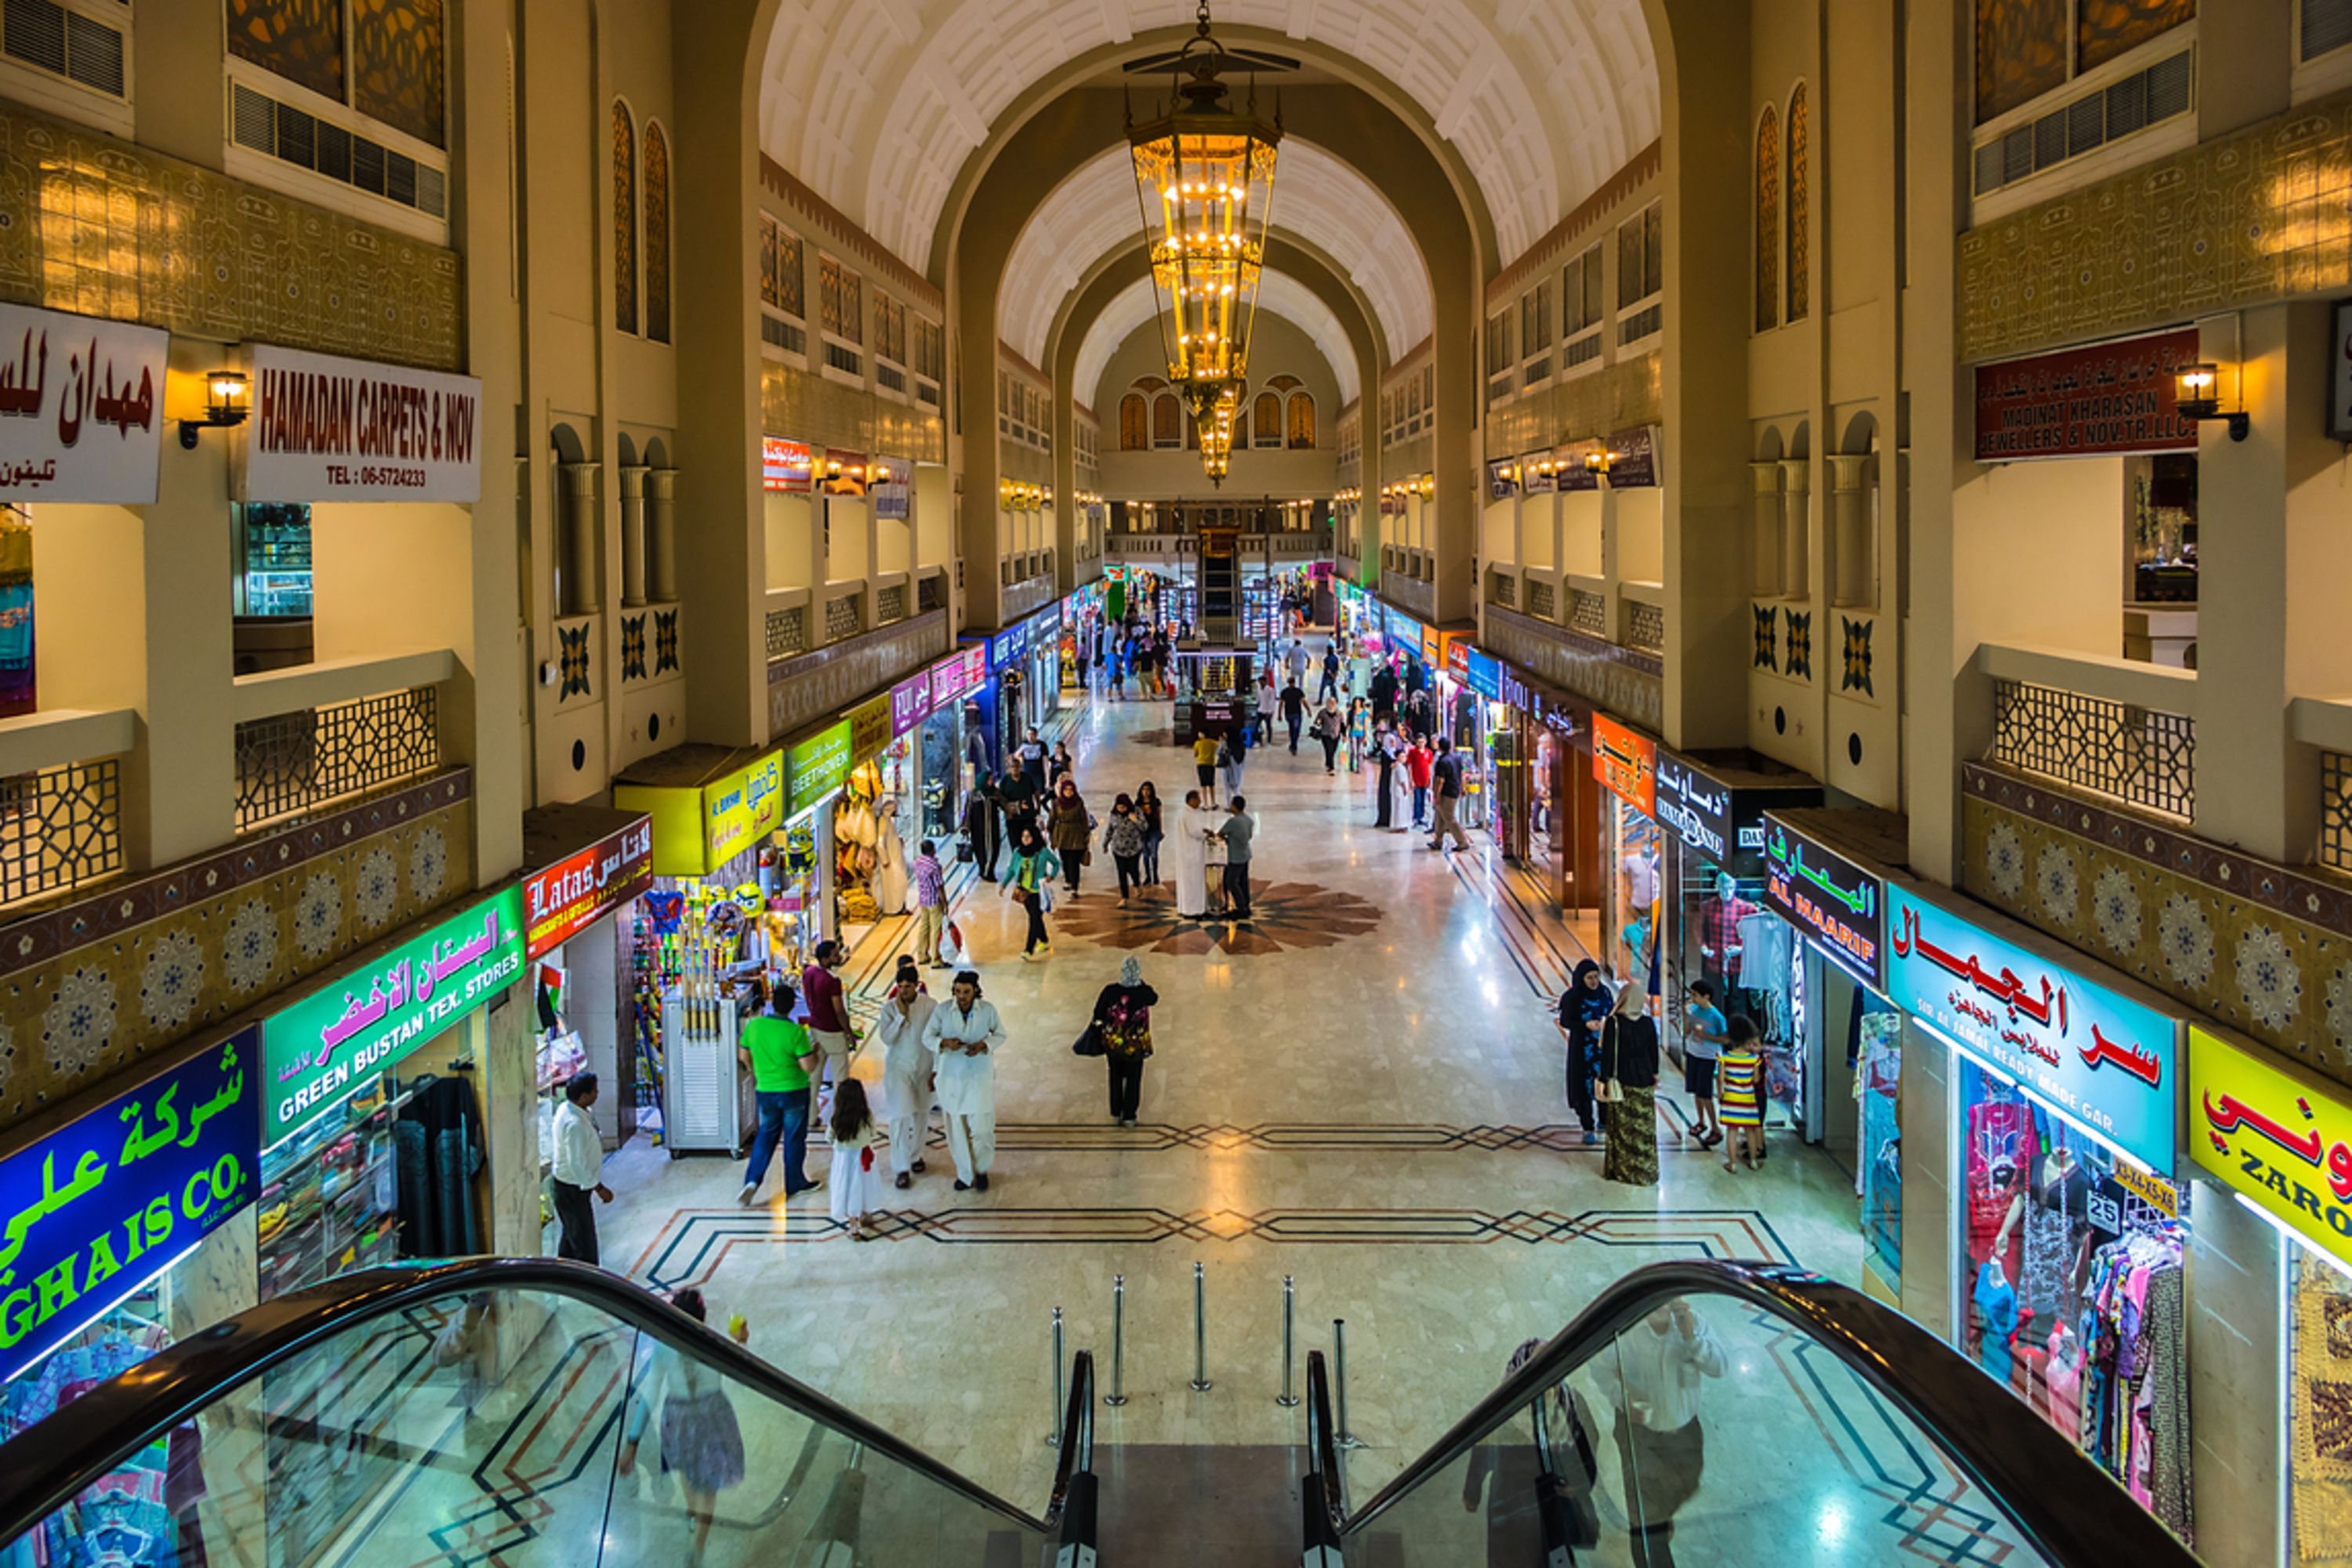 تعد مدينة الشارقة في الإمارات العربية المتحدة وجهة تجارية وترفيهية رائدة، مع مجموعة متنوعة من المولات ومراكز التسوق التي توفر تجارب تسوق ممتازة.